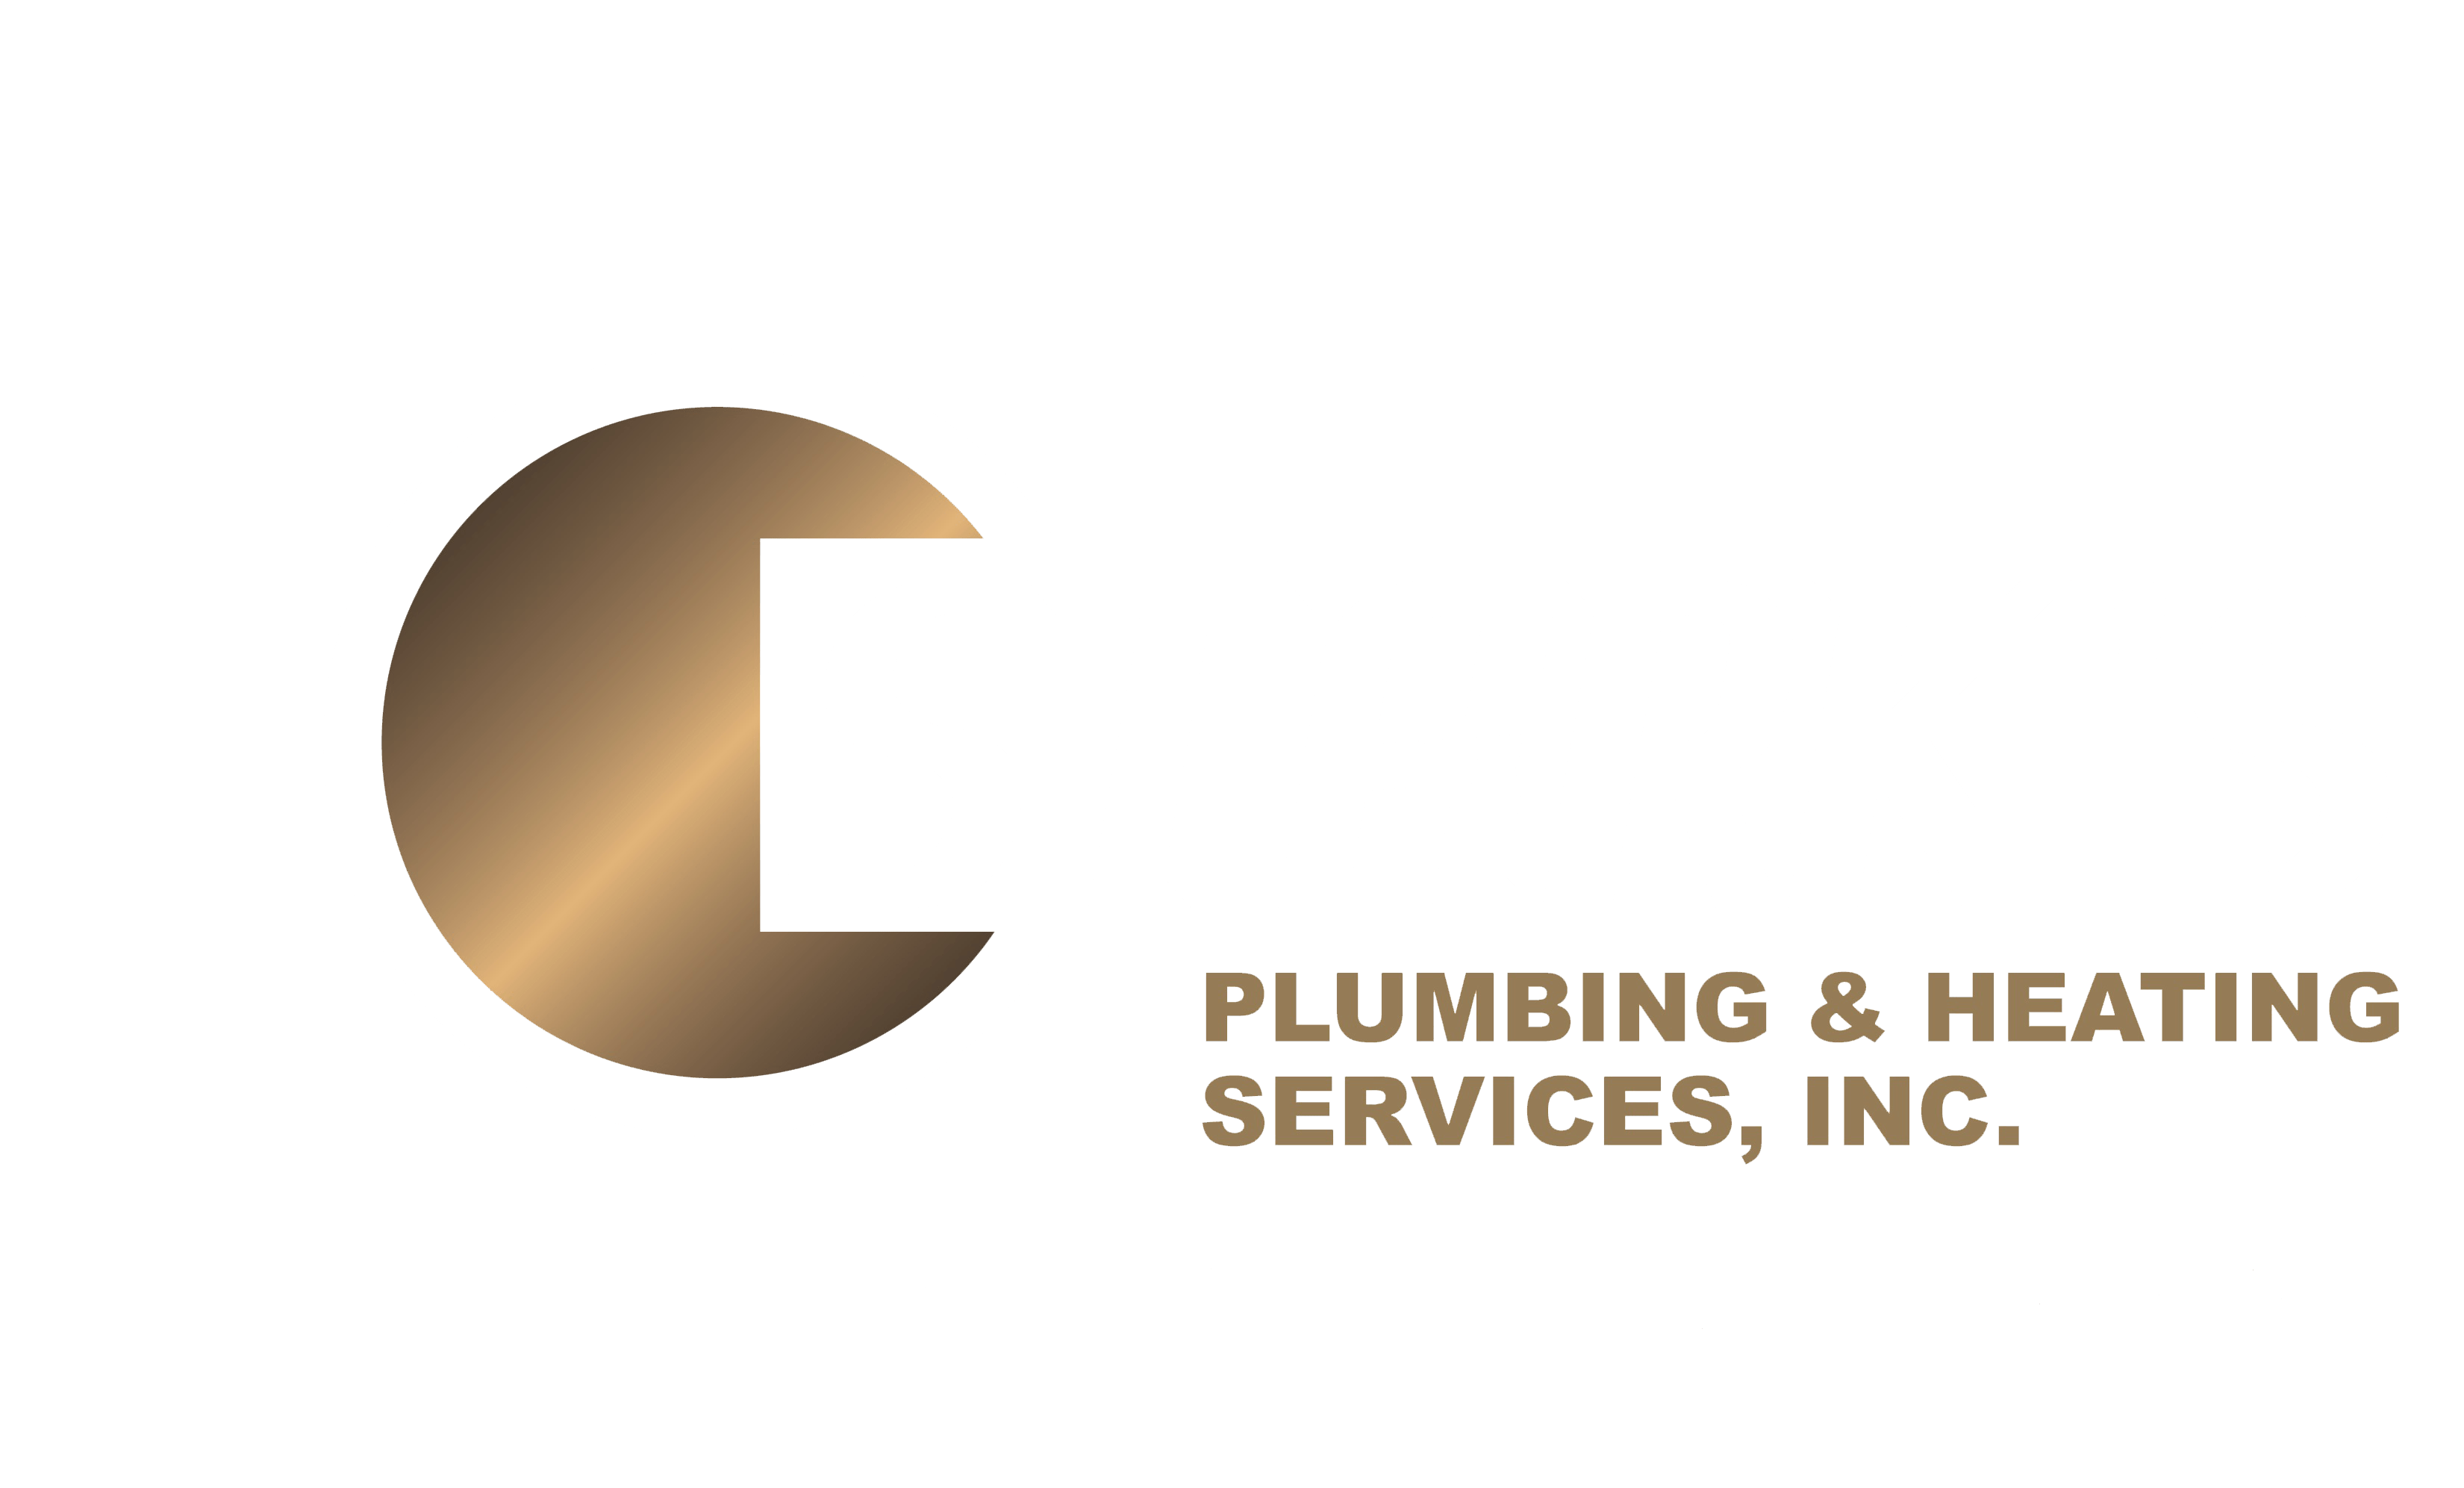 Stark's Plumbing & Heating Services